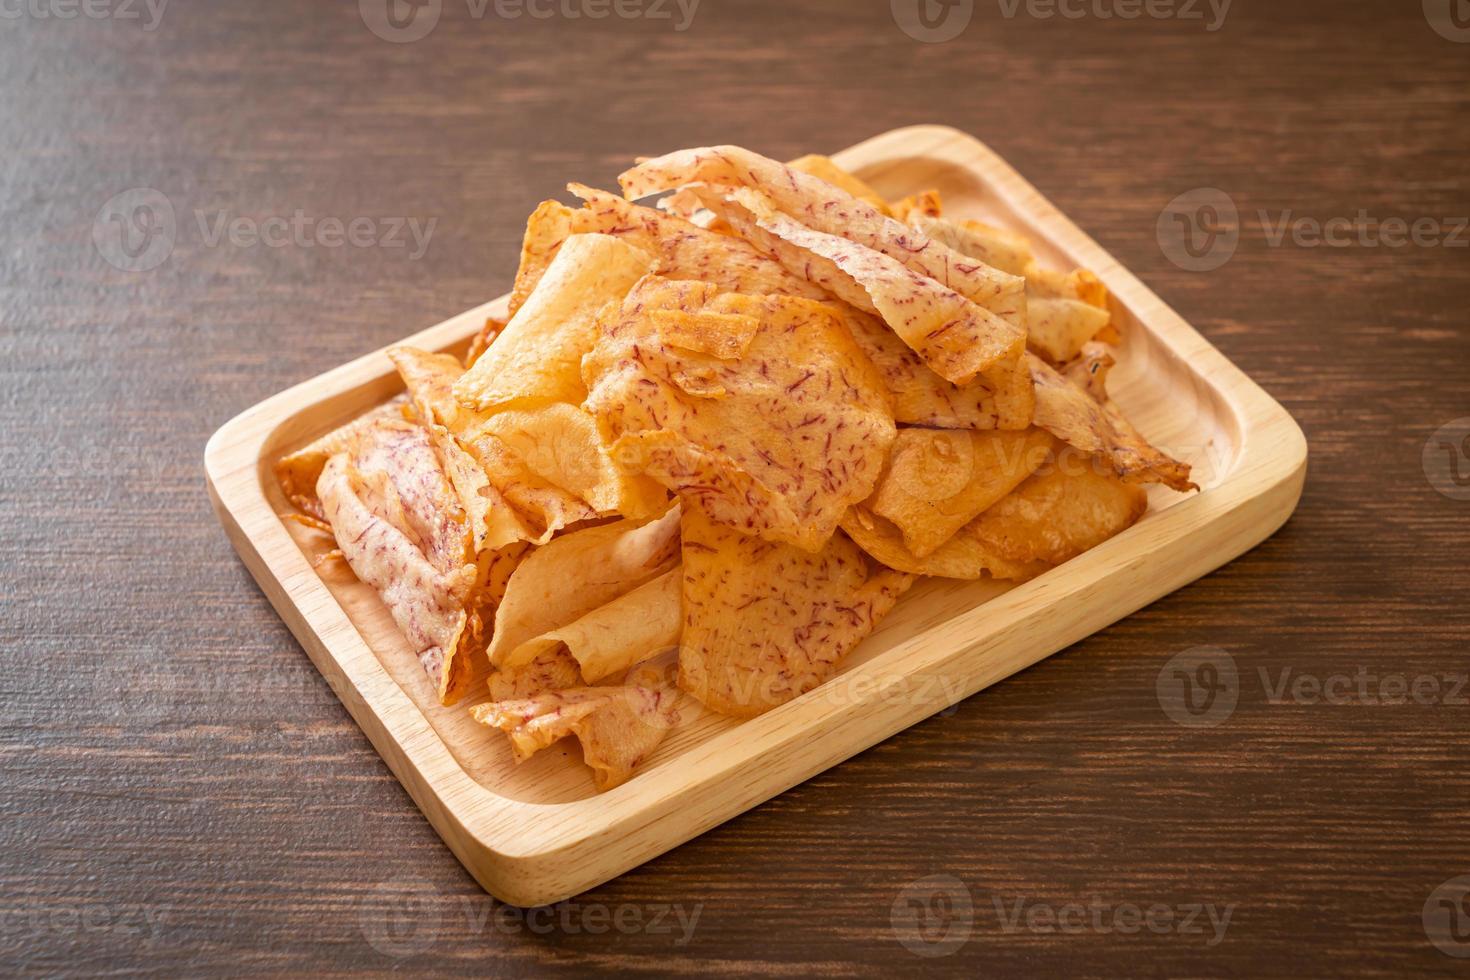 chips di taro - taro affettato fritto o al forno foto